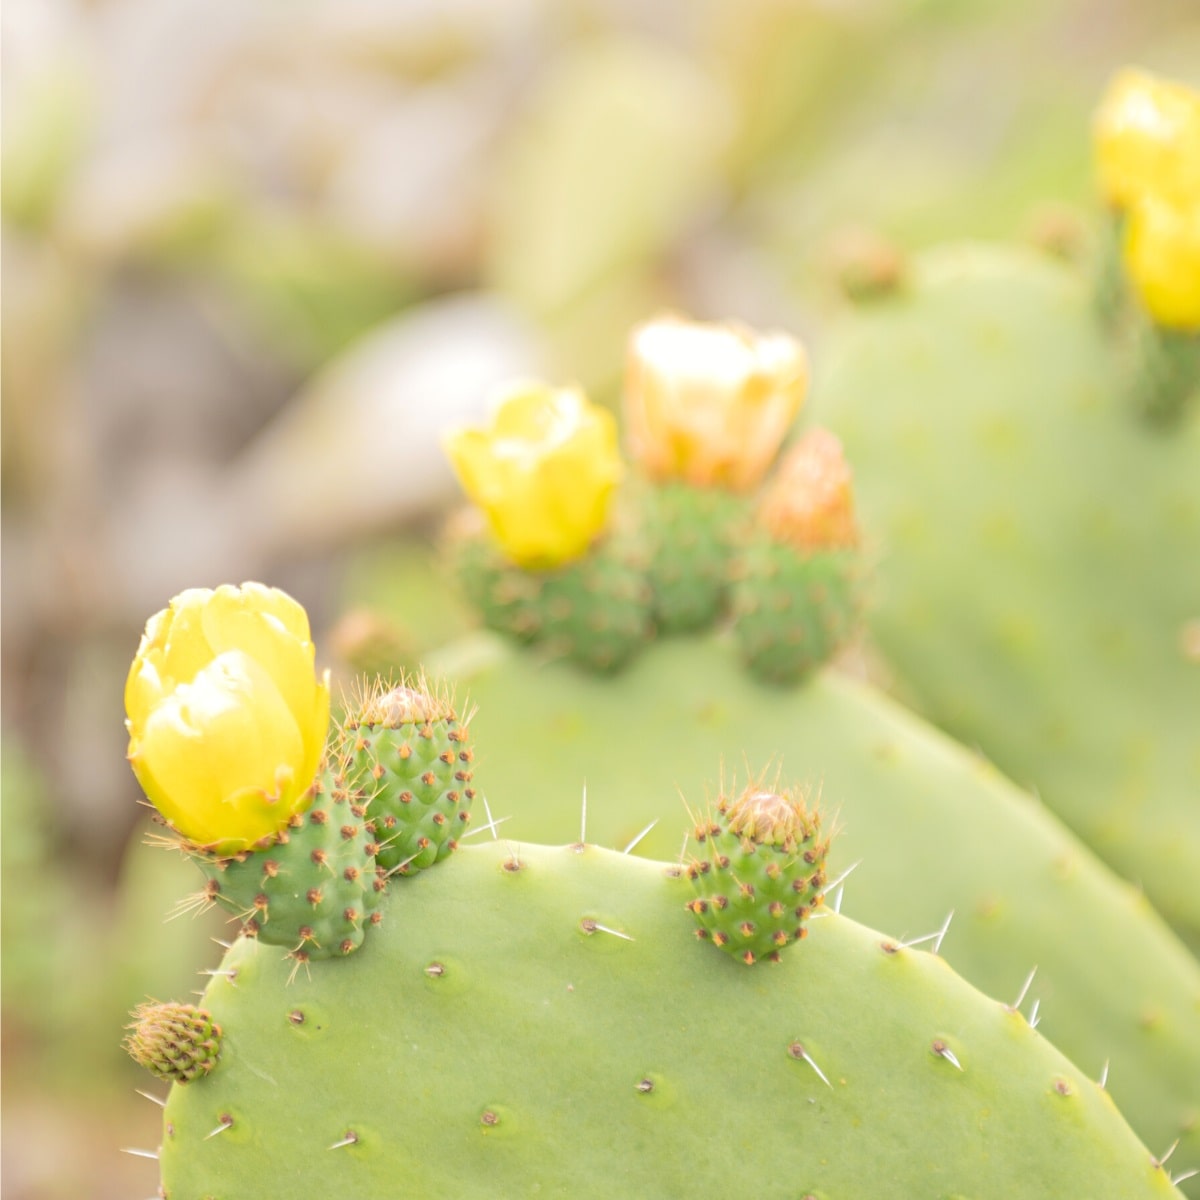 Nopal cactus flower